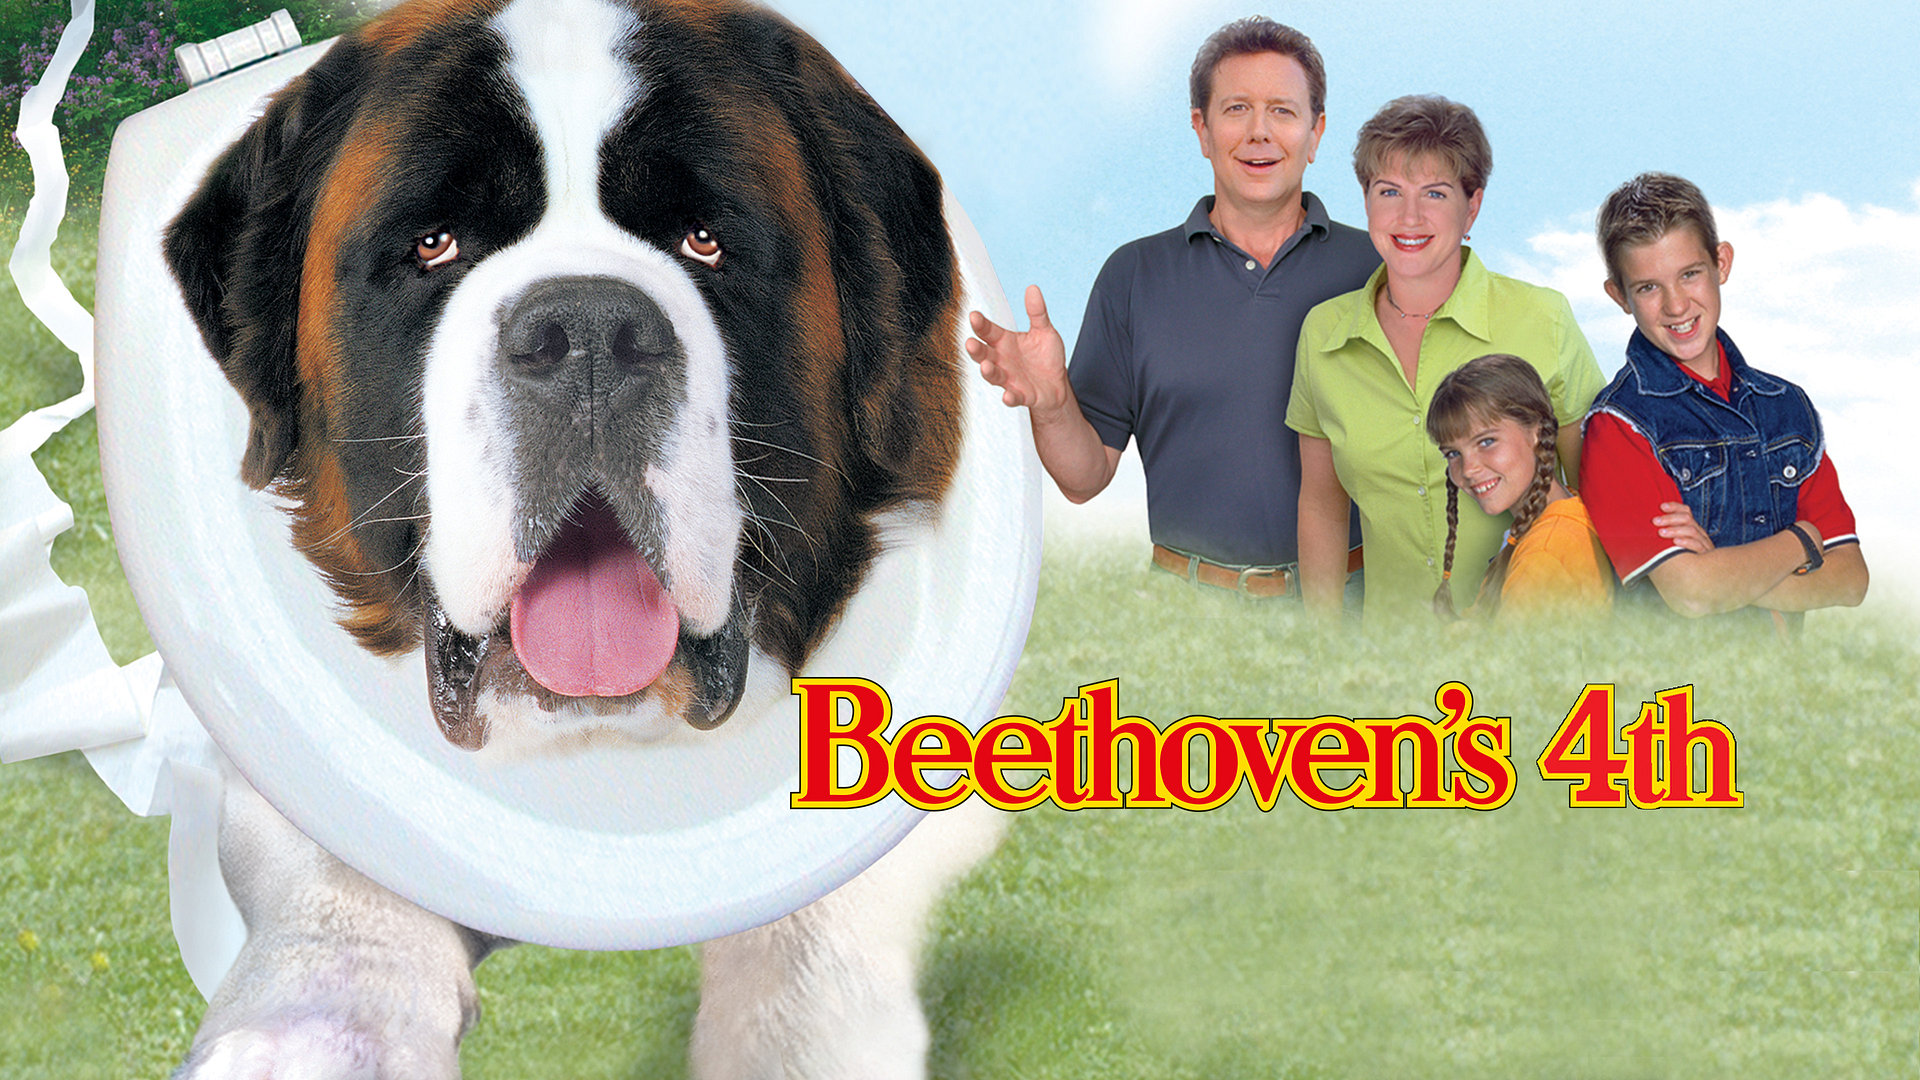 Beethovens fjerde